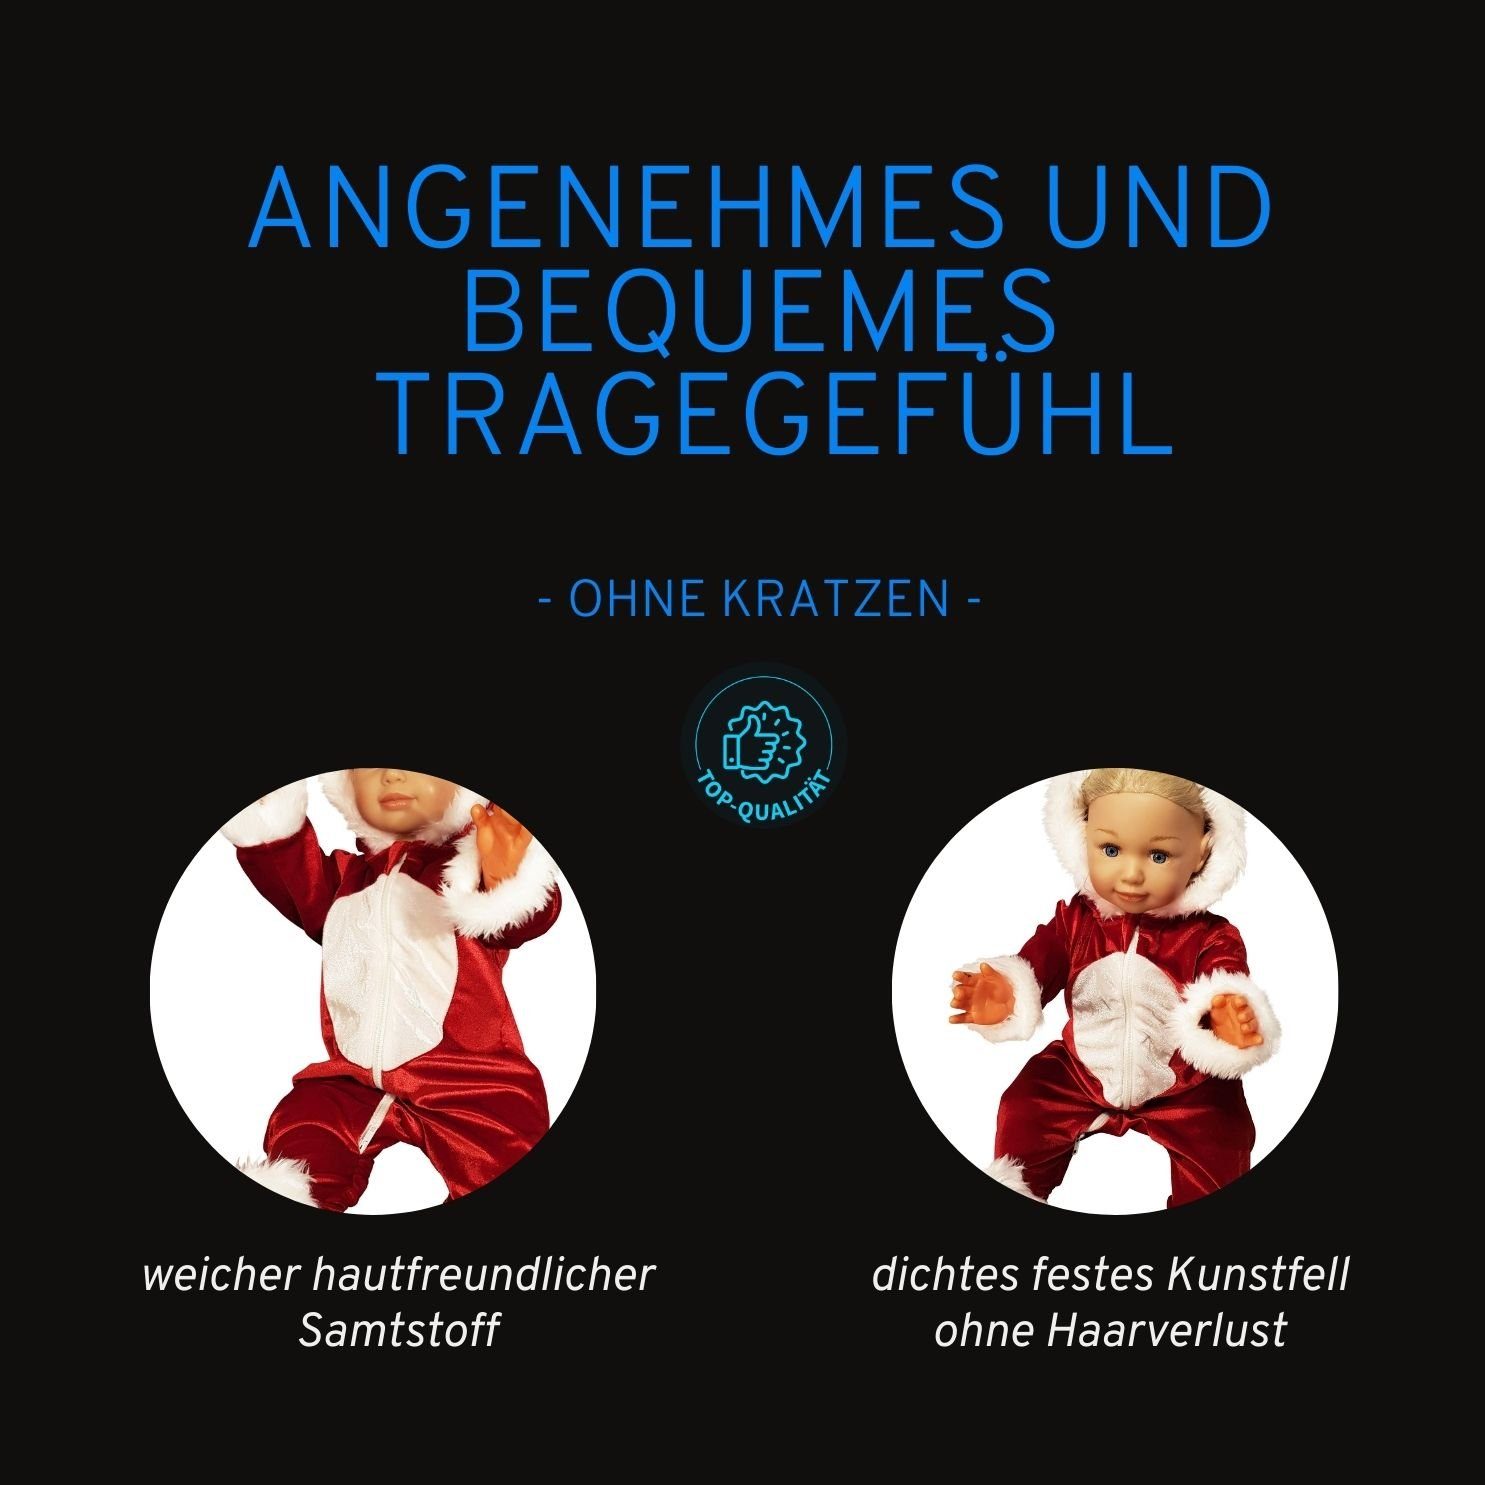 Weihnachtsfotos/ mit Weihnachtsoutfit/ Weihnachtsdesign im Weihnachtsoverall Berlinsel Weihnachtsanzug Strampler Zwillinge Weihnachtsgeschenk/ / Kapuze/